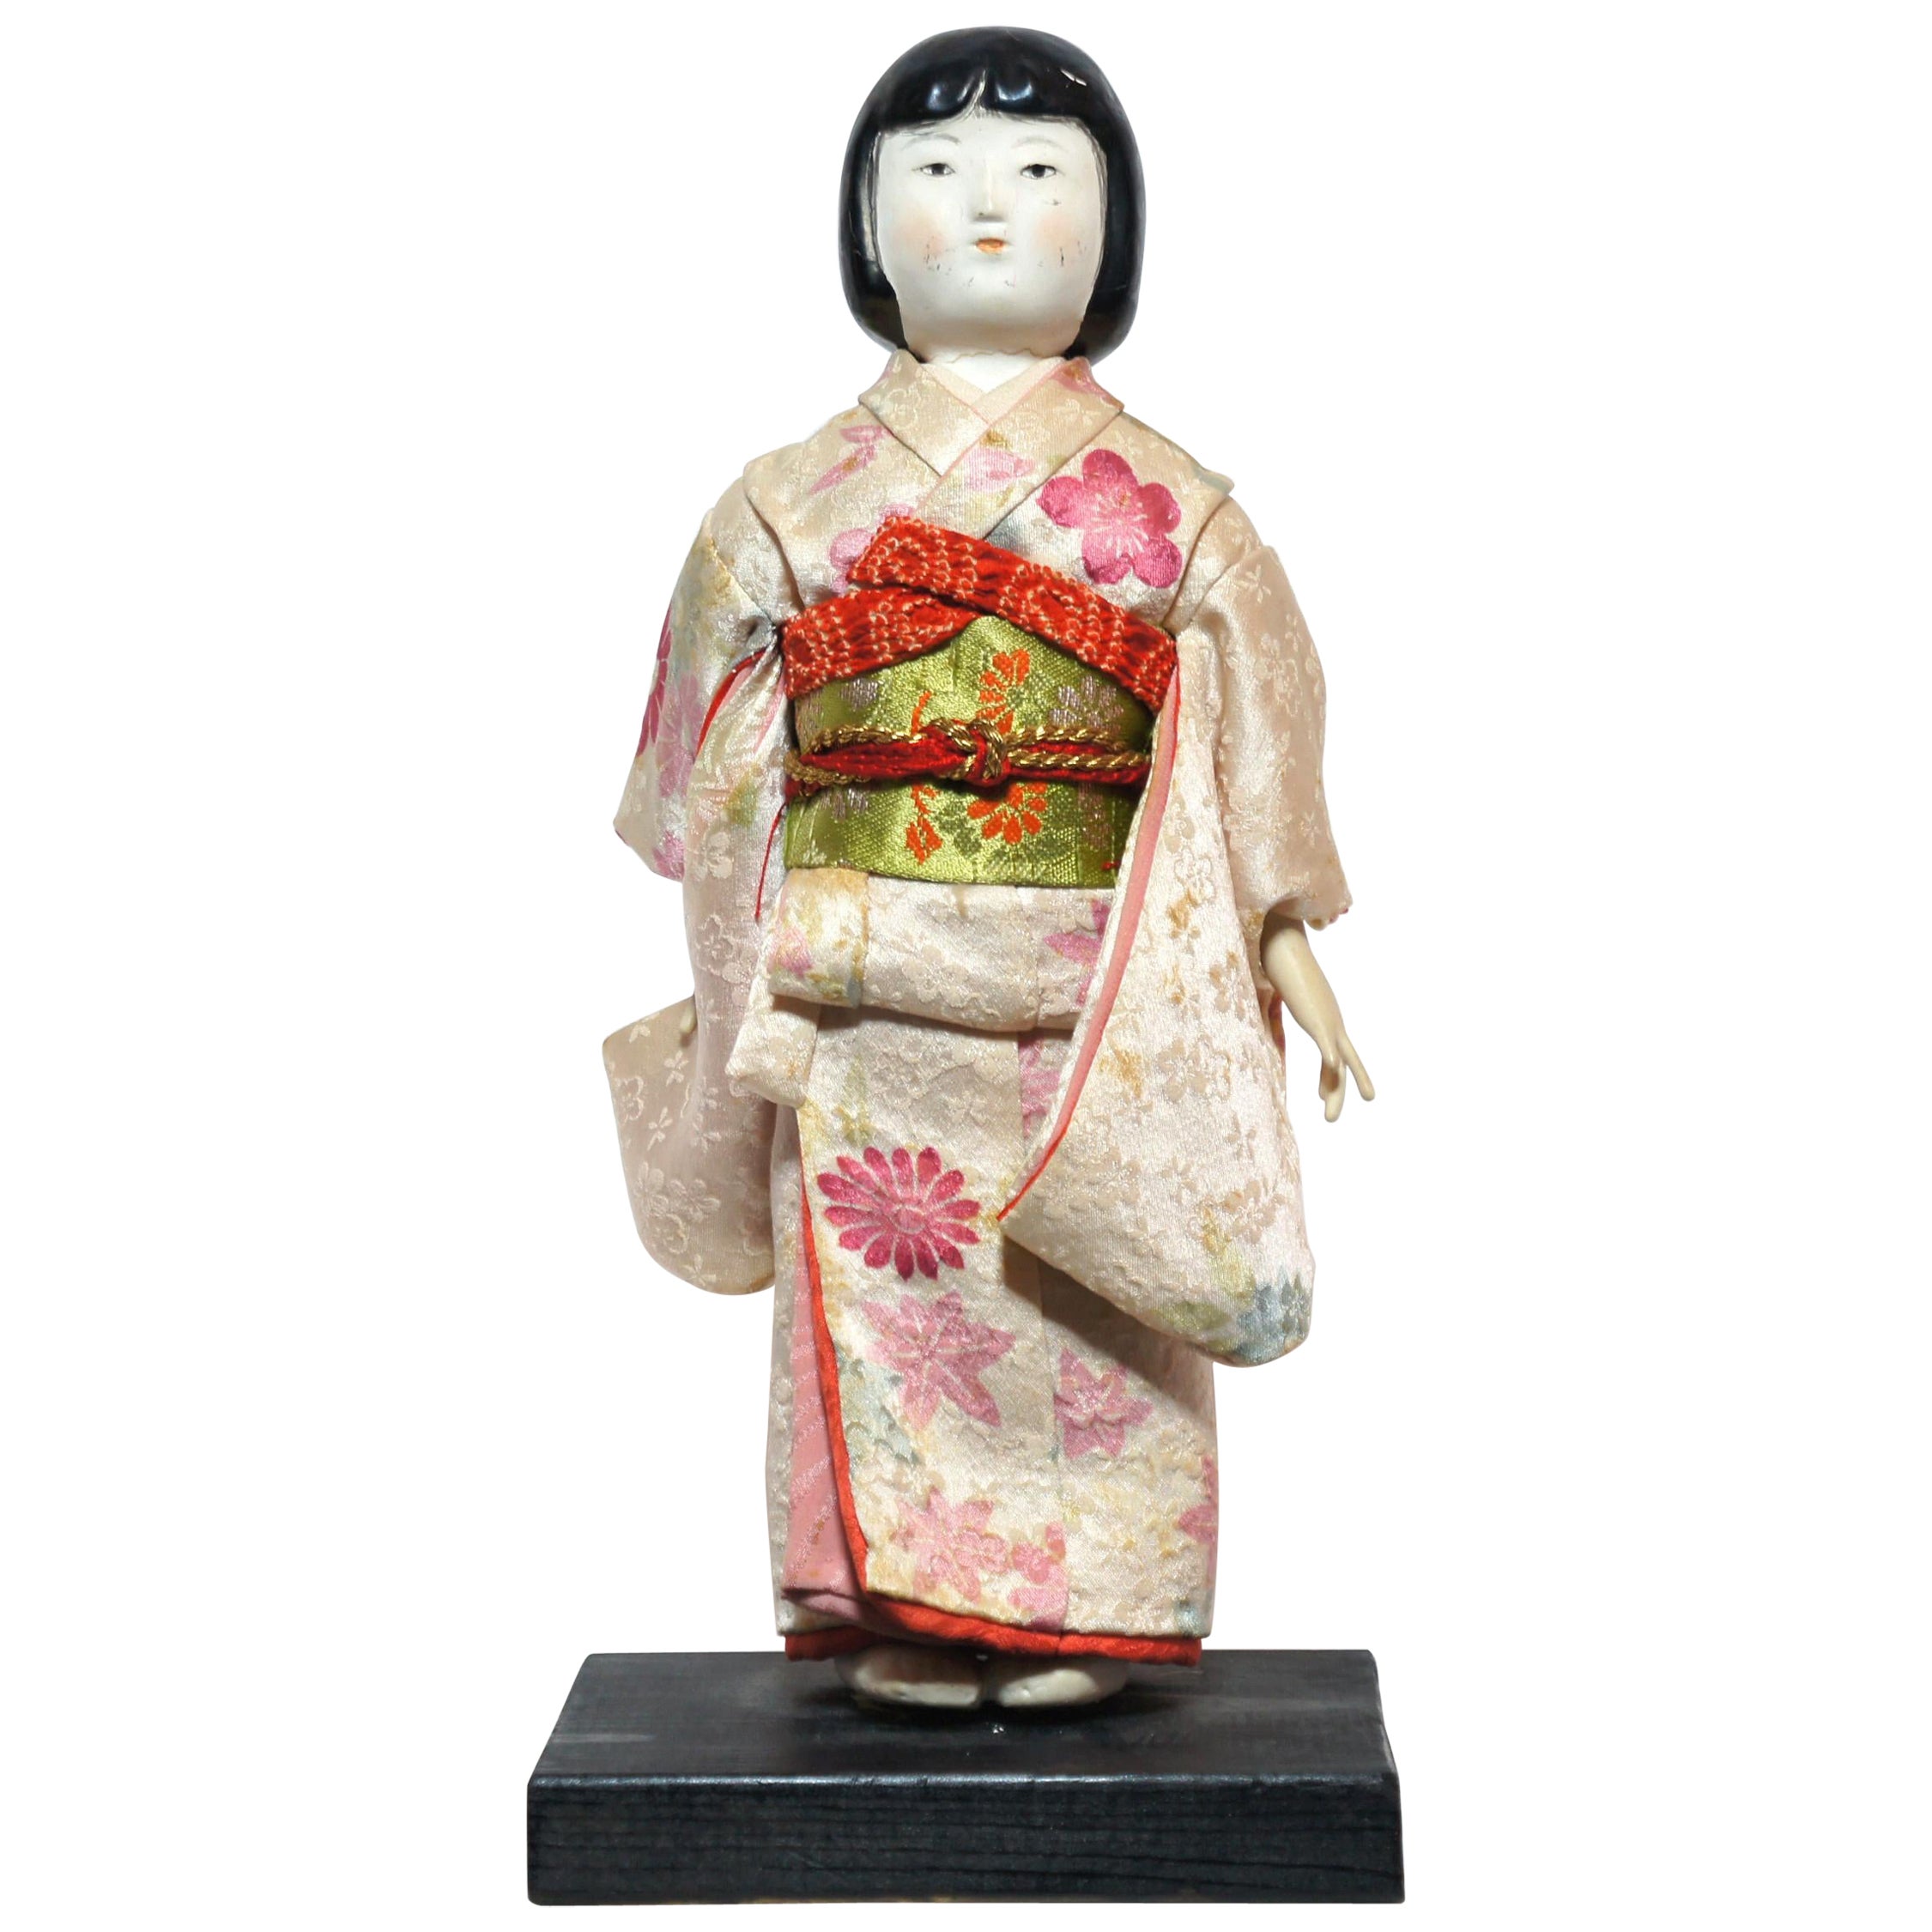 Antique Japanese Traditional 'KIMEKOMI' Doll Pink Kimono Taisho Era 1912-1926s